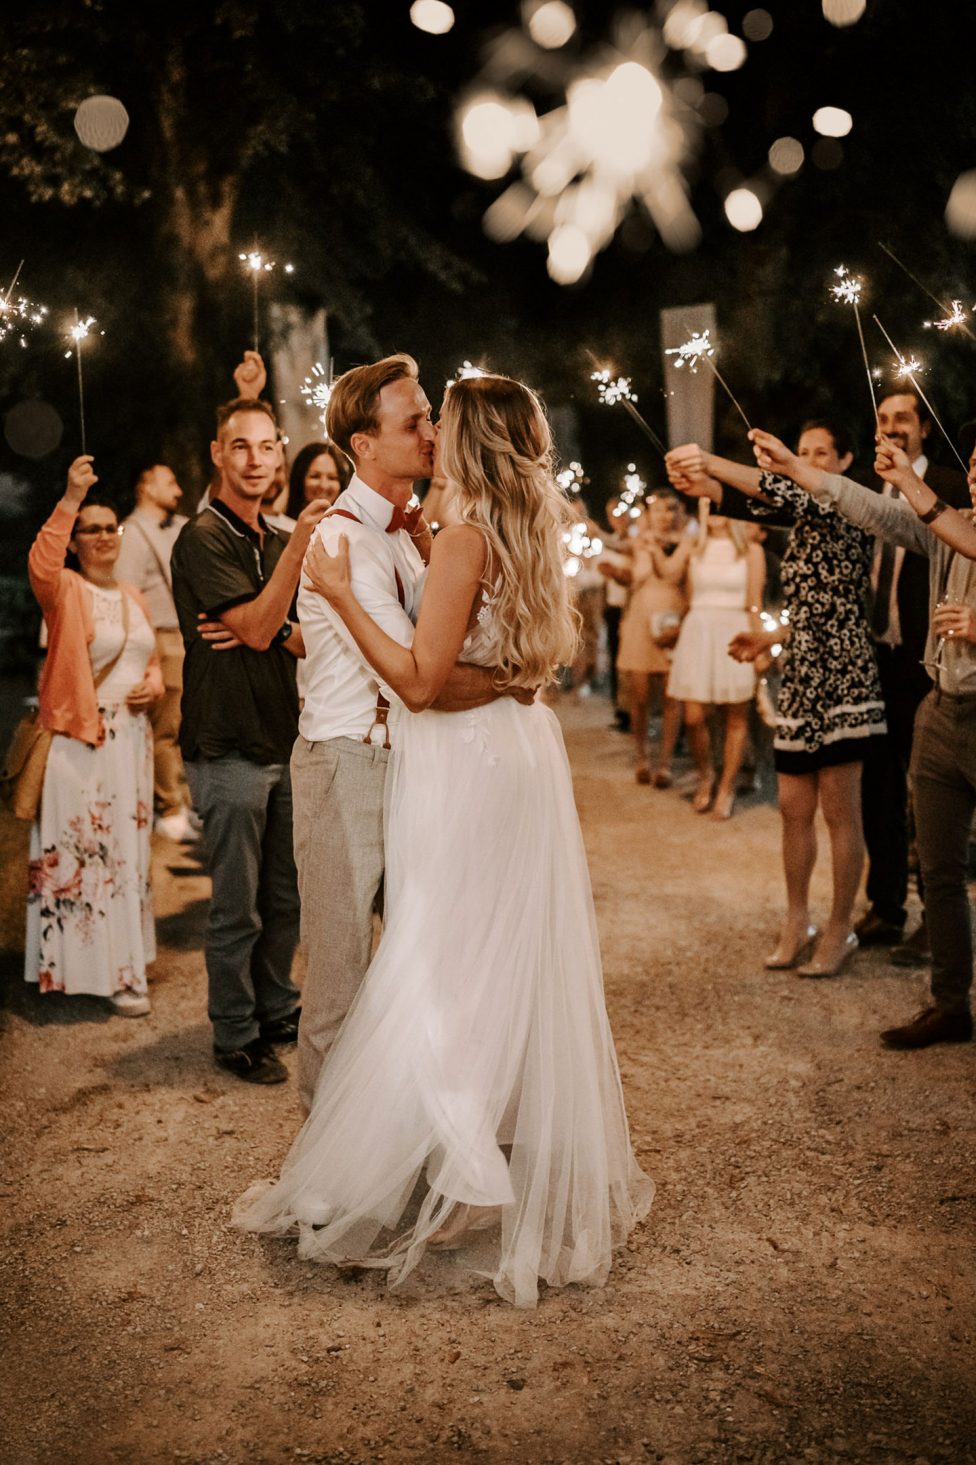 Hochzeitswahn - Braut und Bräutigam tanzen nachts im Freien einen romantischen Tanz, umgeben von Gästen mit Wunderkerzen in der Hand, und schaffen so unter Lichterketten eine zauberhafte Atmosphäre. Magical-Homes